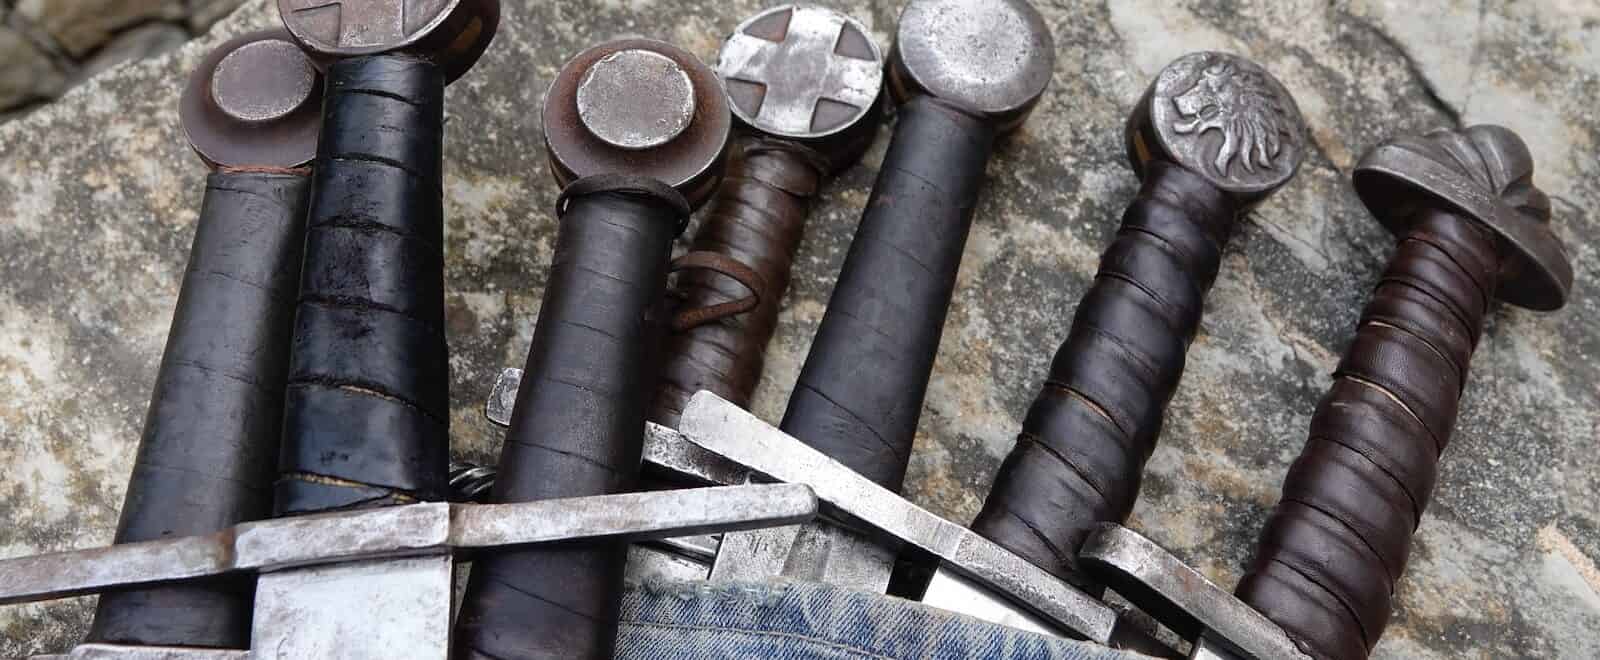 sword handles